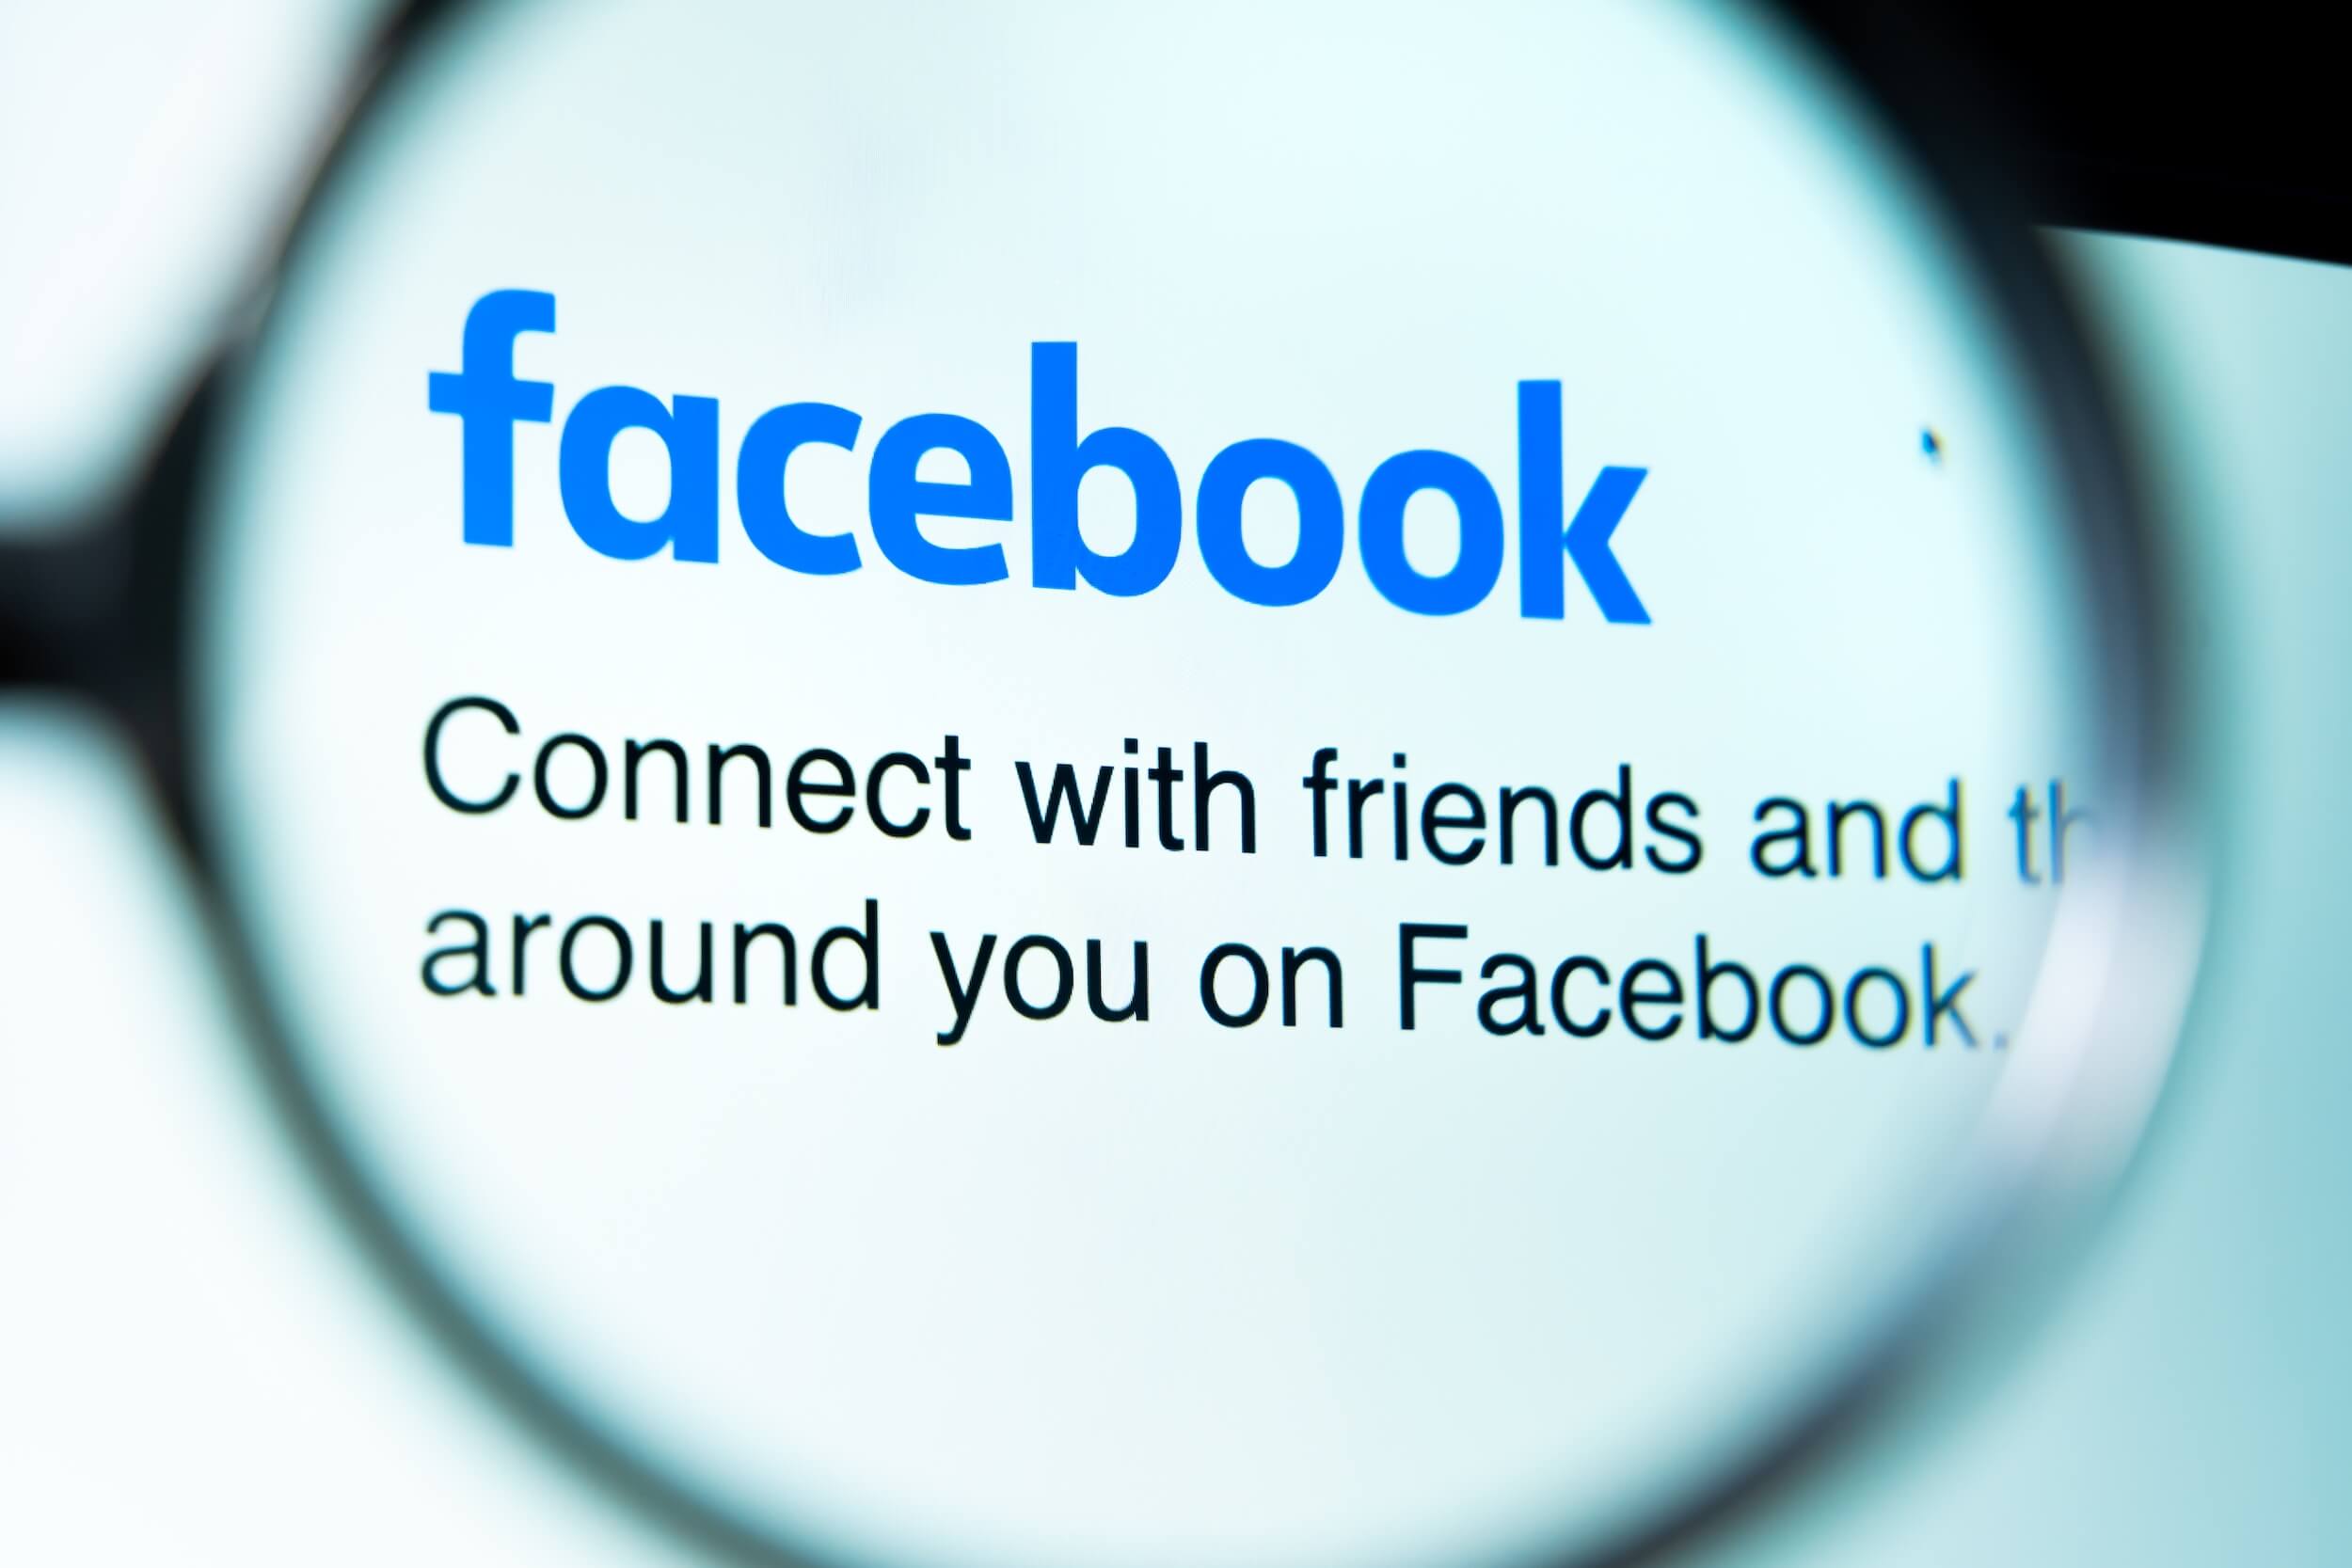 ekran z logo Facebooka pod lupą